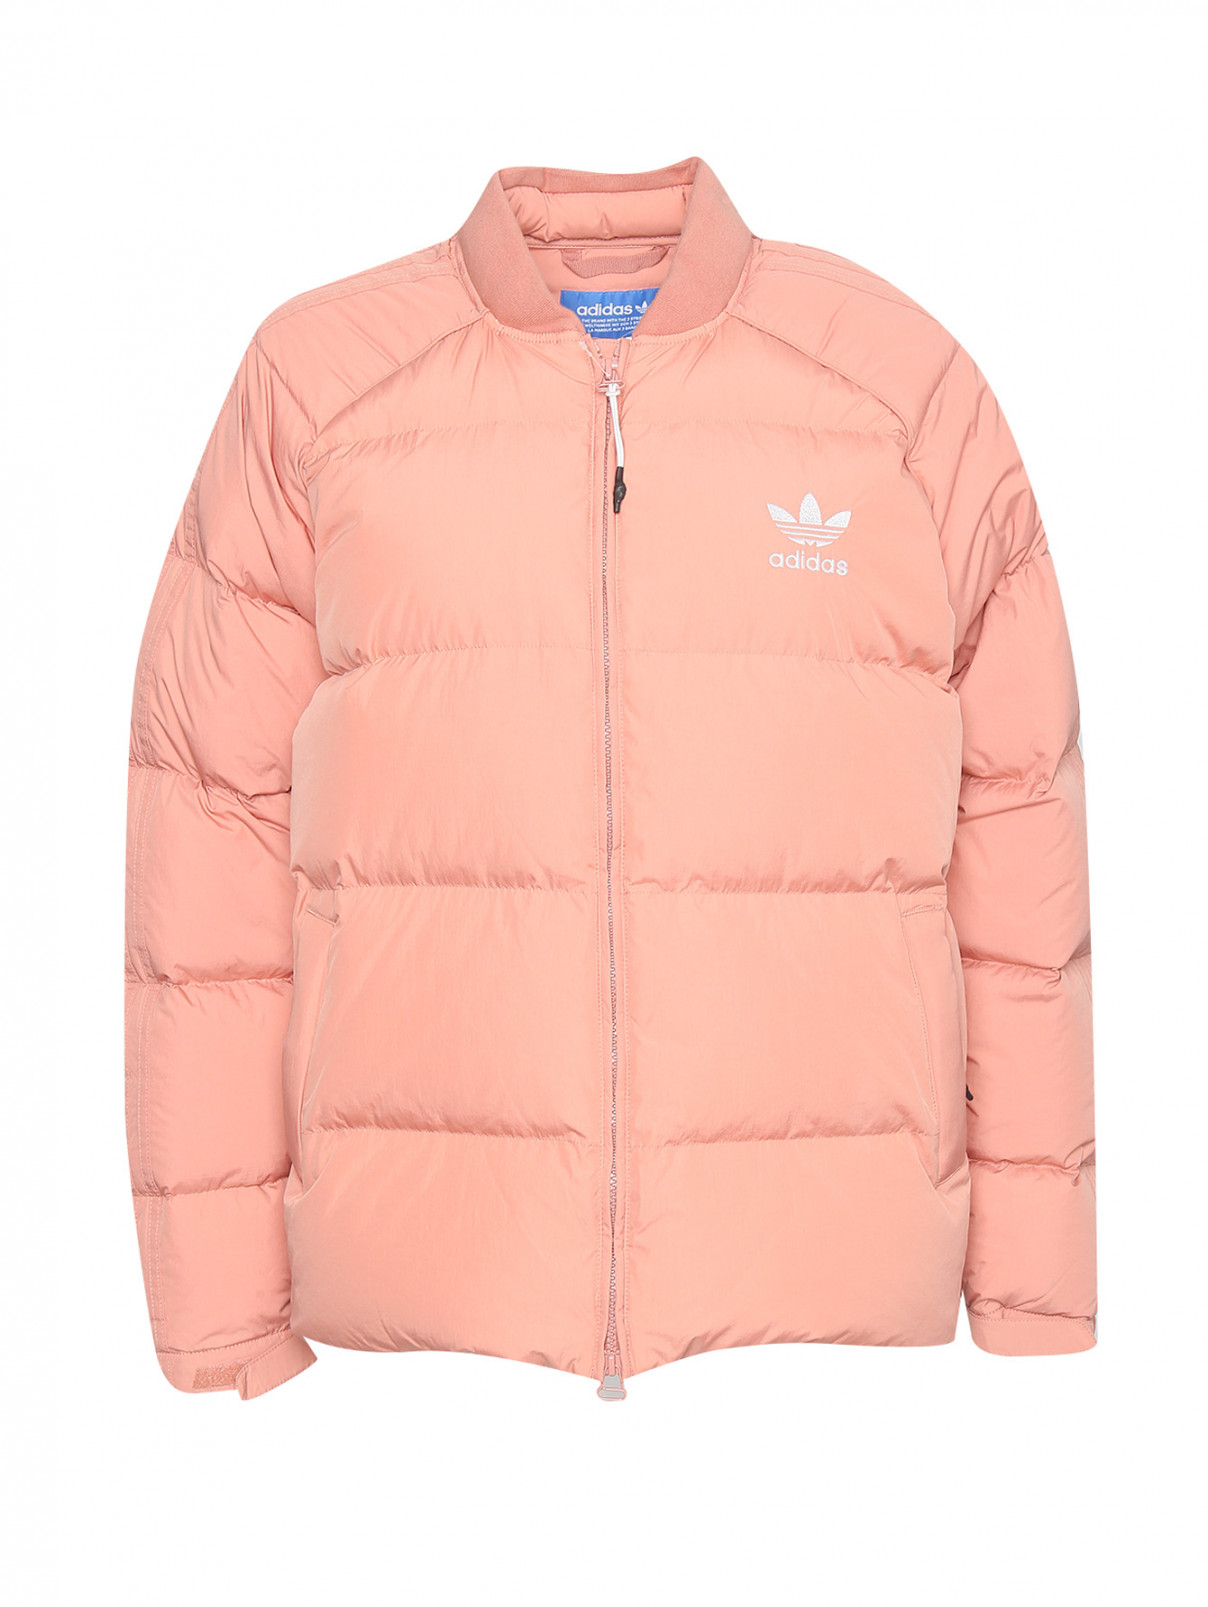 Пуховик на молнии с логотипом Adidas Originals  –  Общий вид  – Цвет:  Розовый